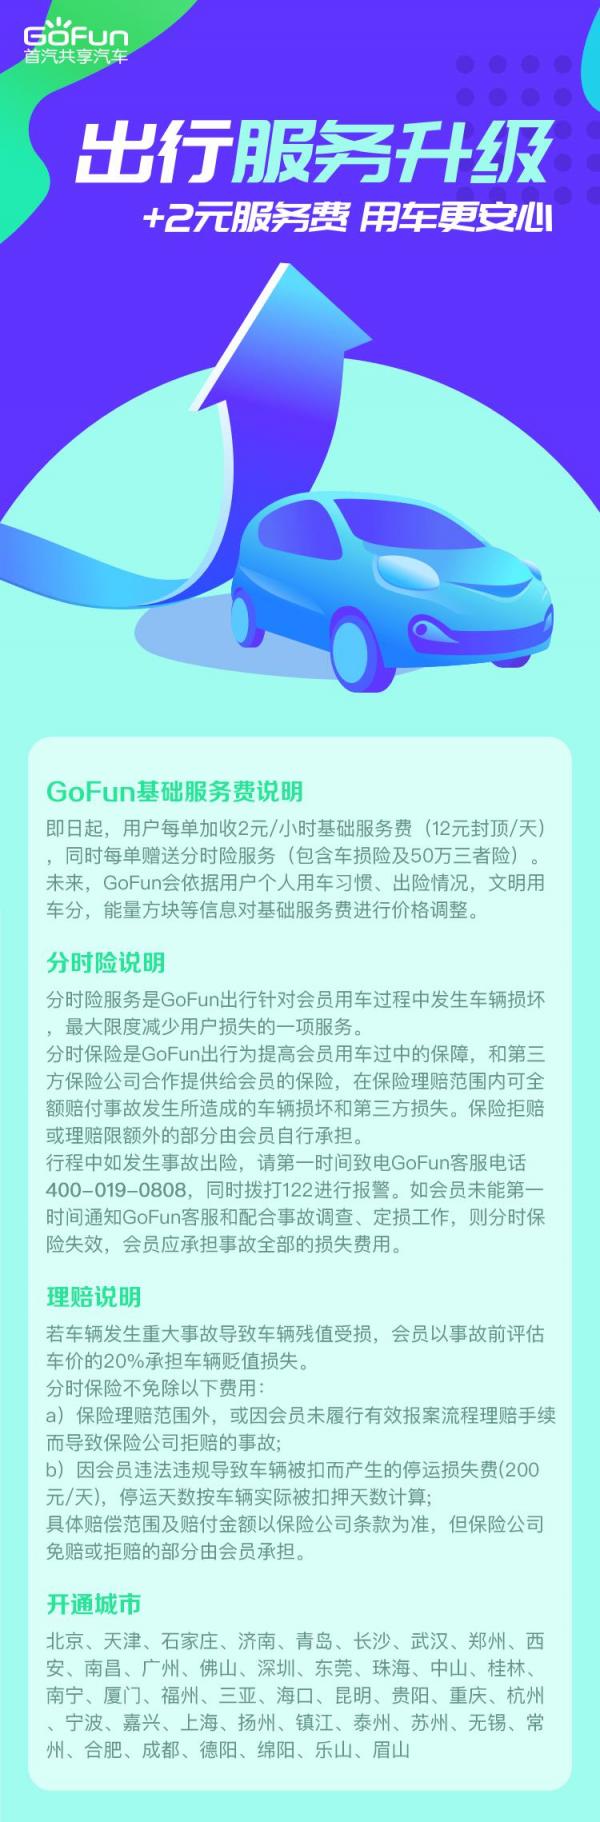 GoFun出行服务全面升级 打造全新用车体验